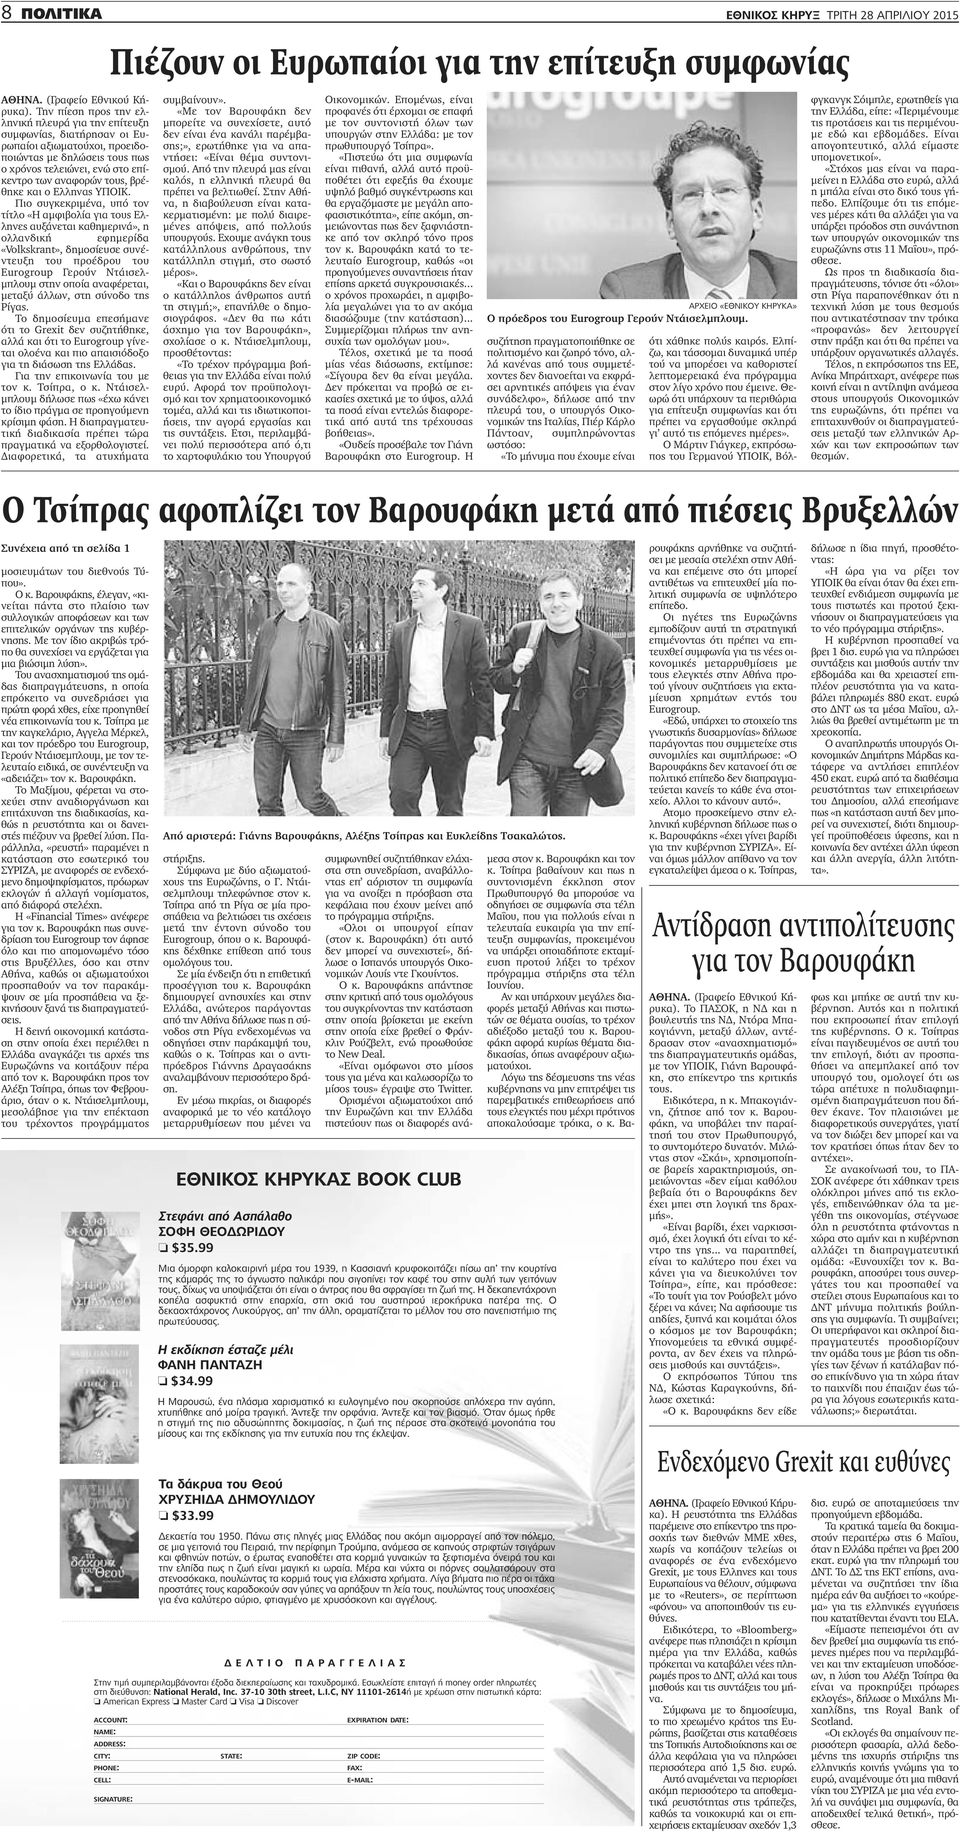 Πιο συγκεκριμένα, υπό τον τίτλο «Η αμφιβολία για τους Ελληνες αυξάνεται καθημερινά», η ολλανδική εφημερίδα «Volkskrant», δημοσίευσε συνέντευξη του προέδρου του Eurogroup Γερούν Ντάισελμπλουμ στην